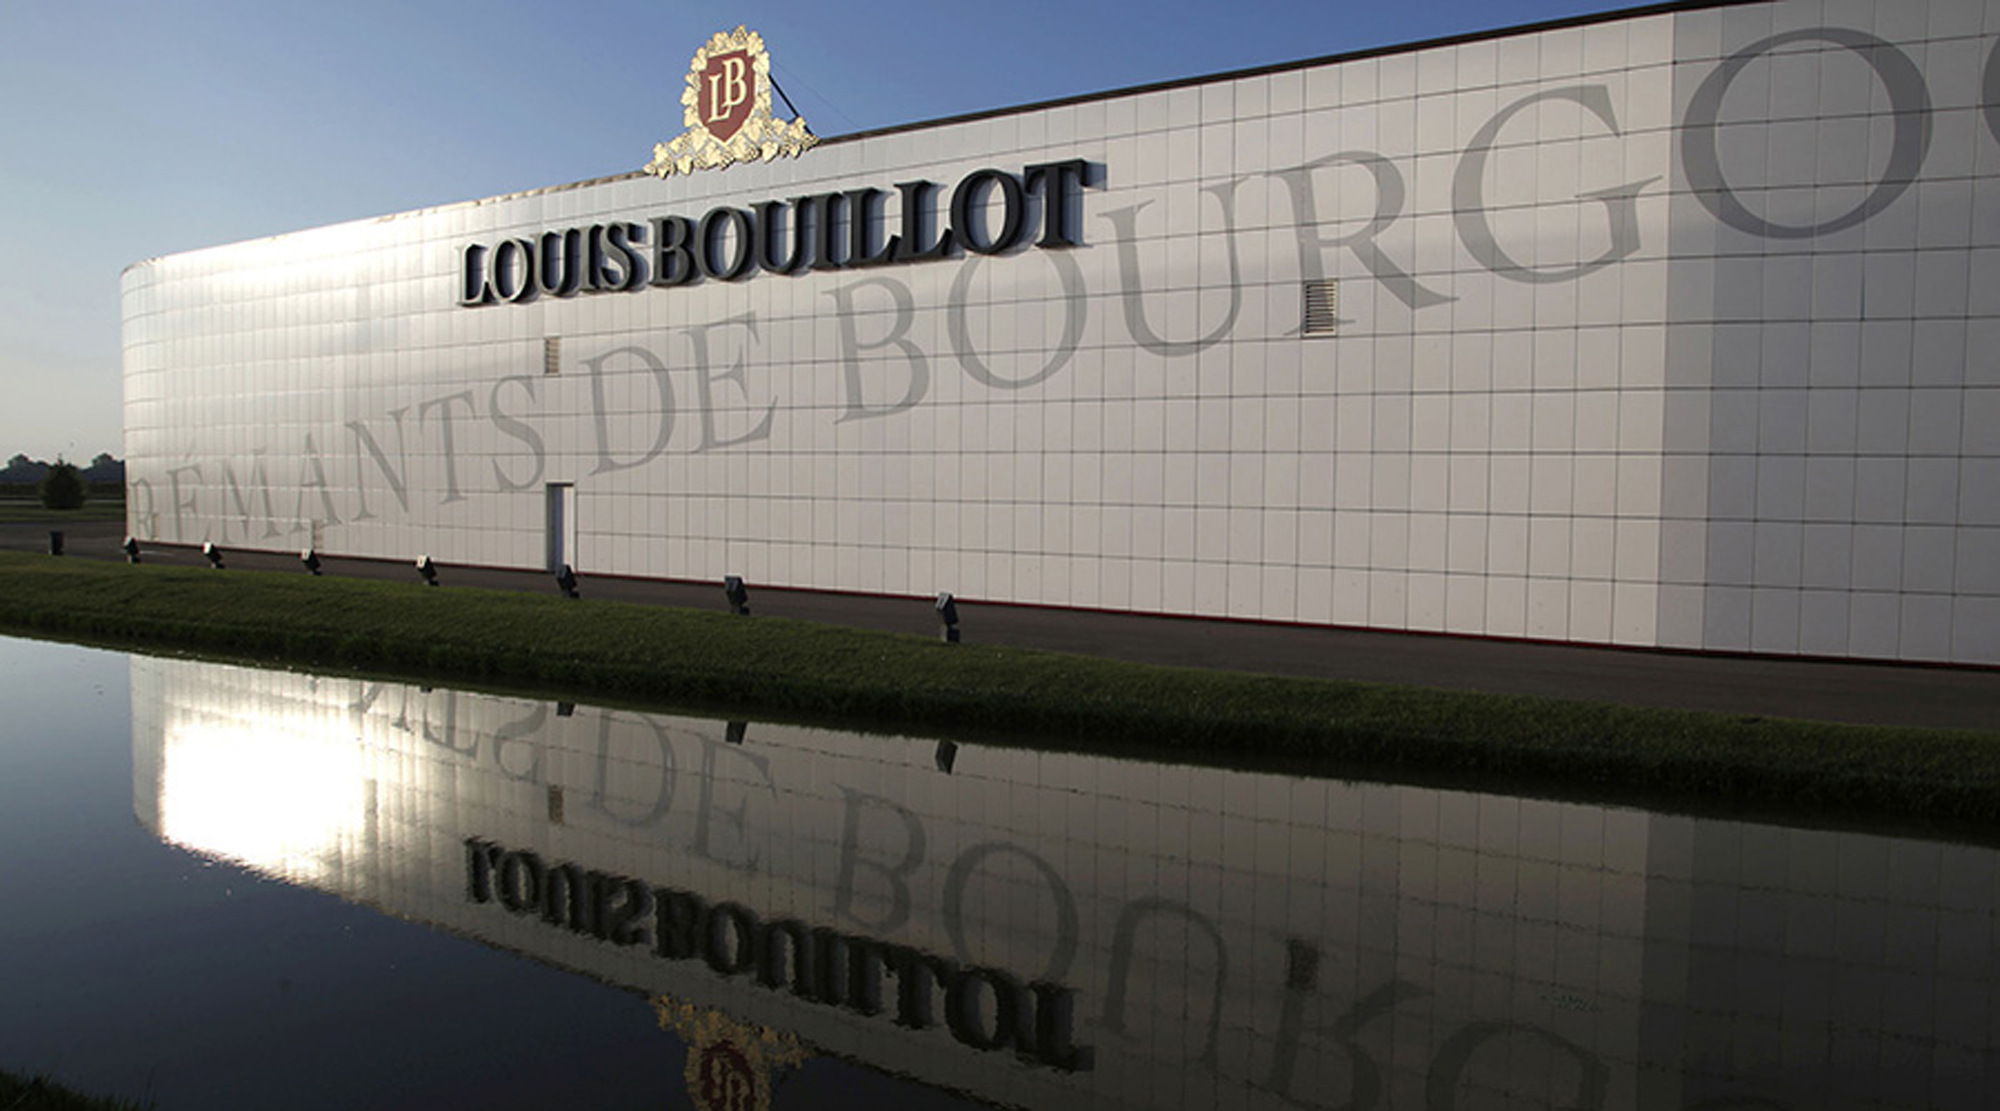 Bouillot Louis